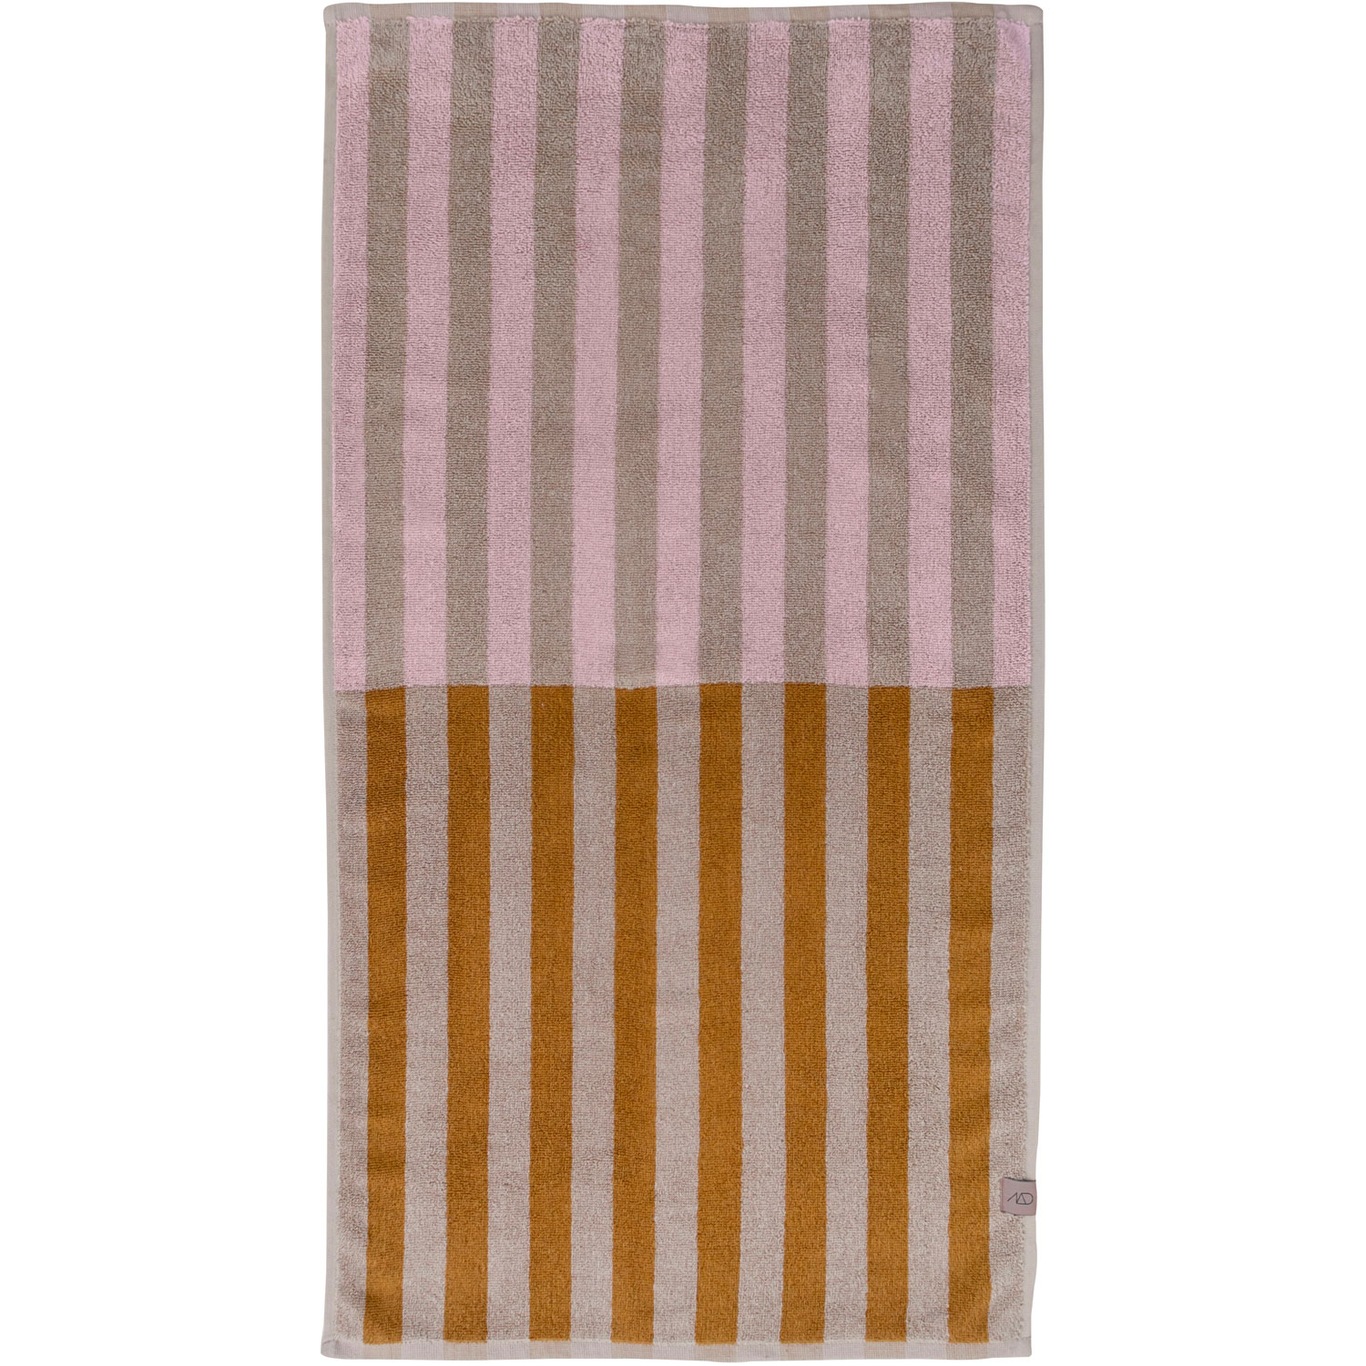 Disorder Towel 40x55 cm, Powder Rose